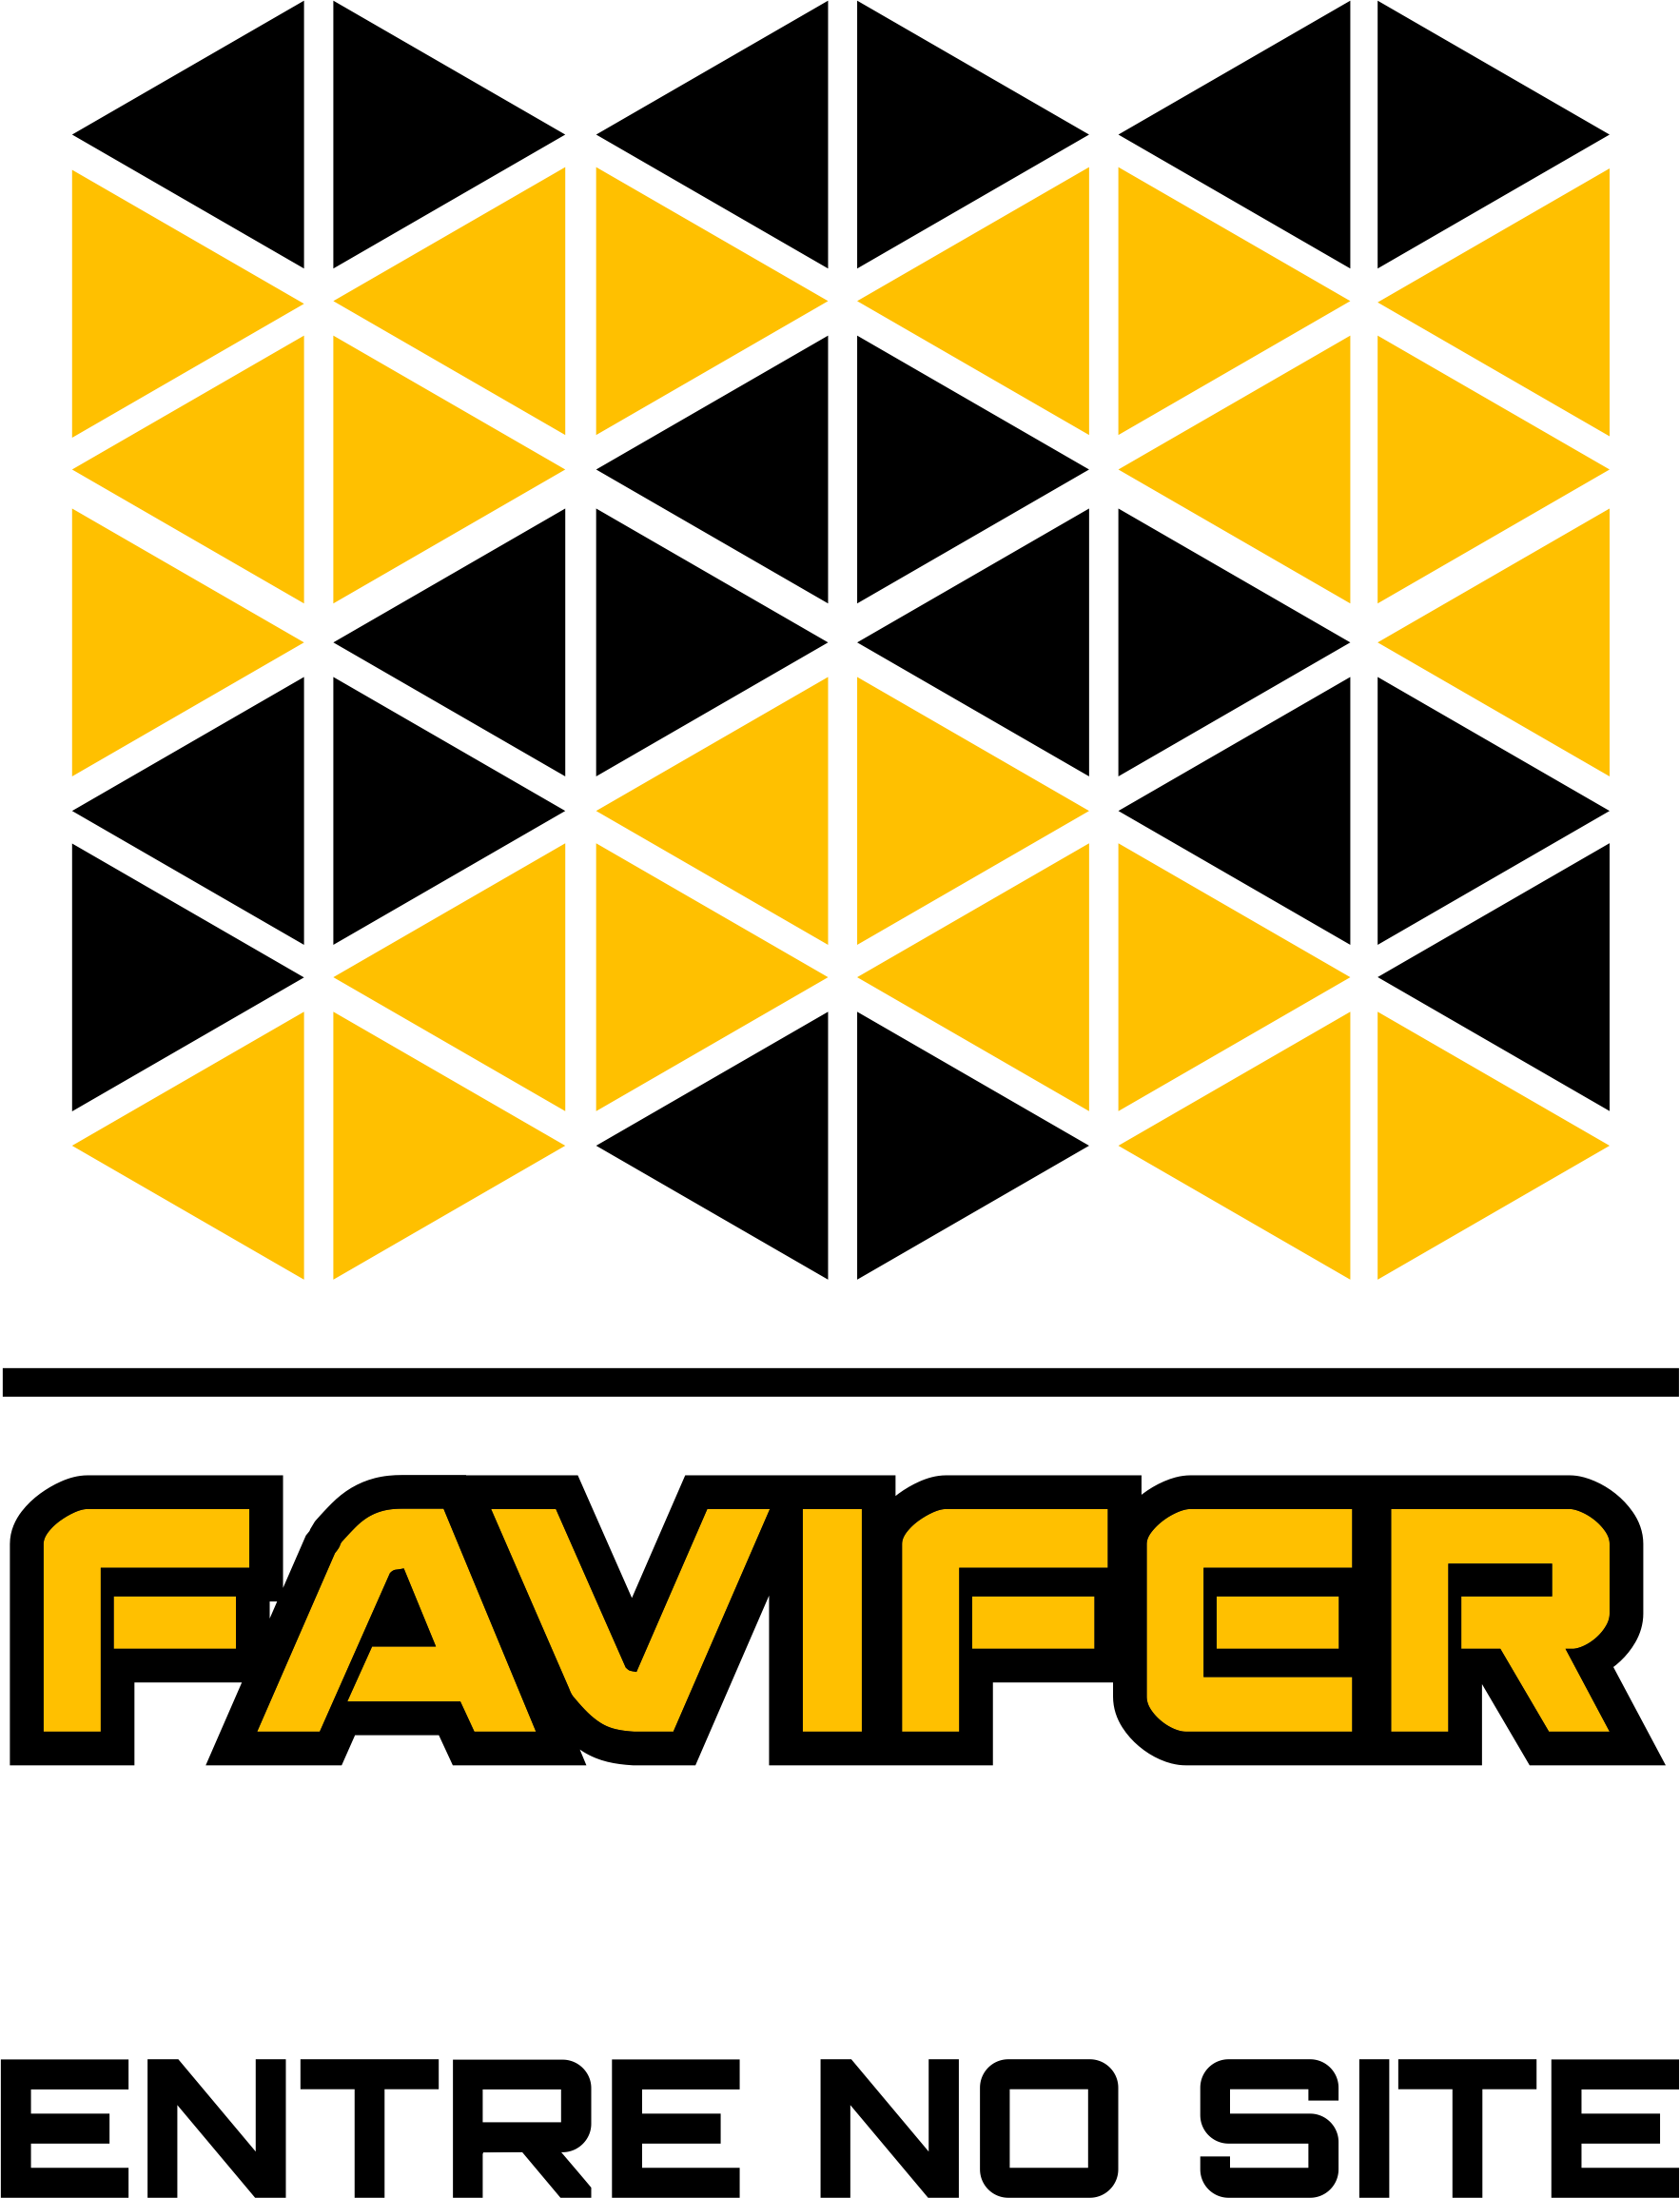 Favifer